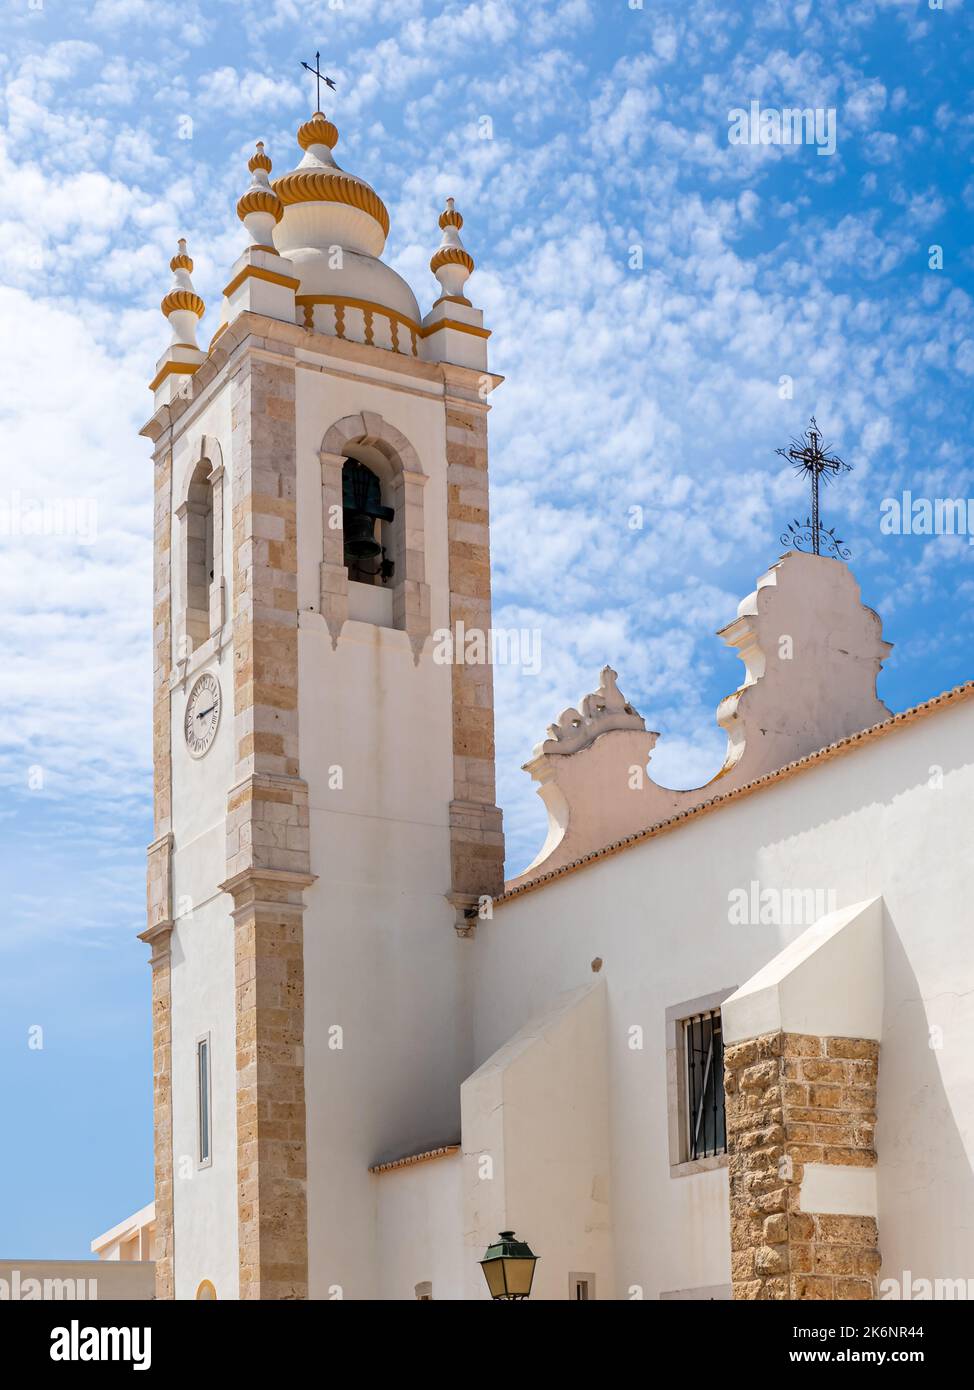 White baroque style bell tower of the church Igreja Matriz (Main Church), also known as Igreja de nossa Senhora da Conceição. Stock Photo